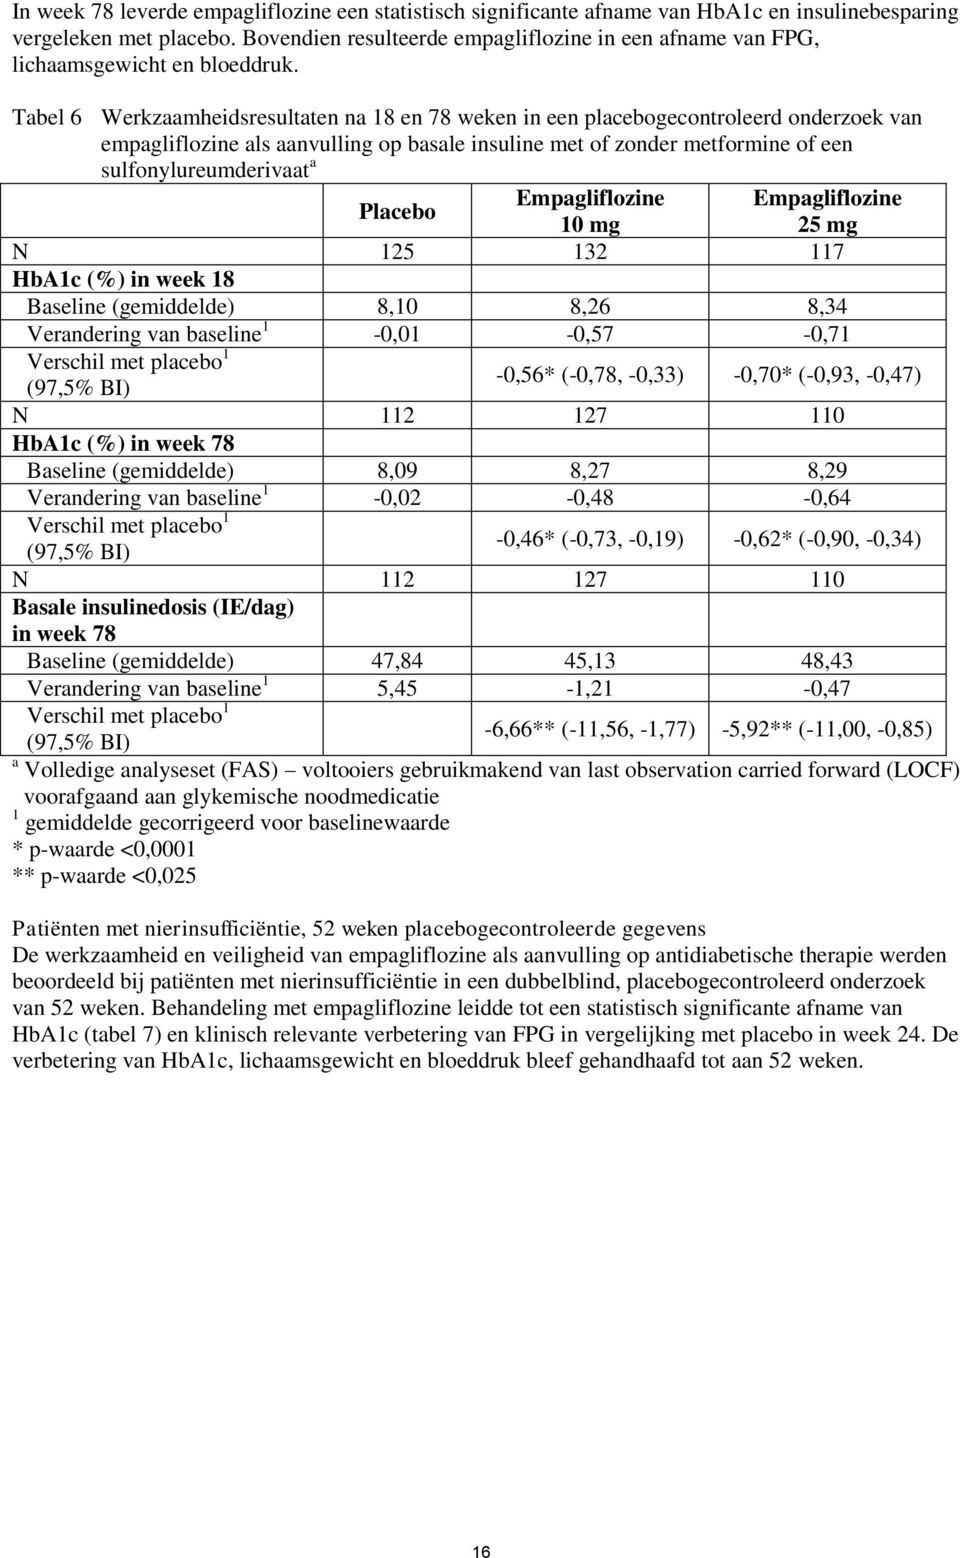 Tabel 6 Werkzaamheidsresultaten na 18 en 78 weken in een placebogecontroleerd onderzoek van empagliflozine als aanvulling op basale insuline met of zonder metformine of een sulfonylureumderivaat a